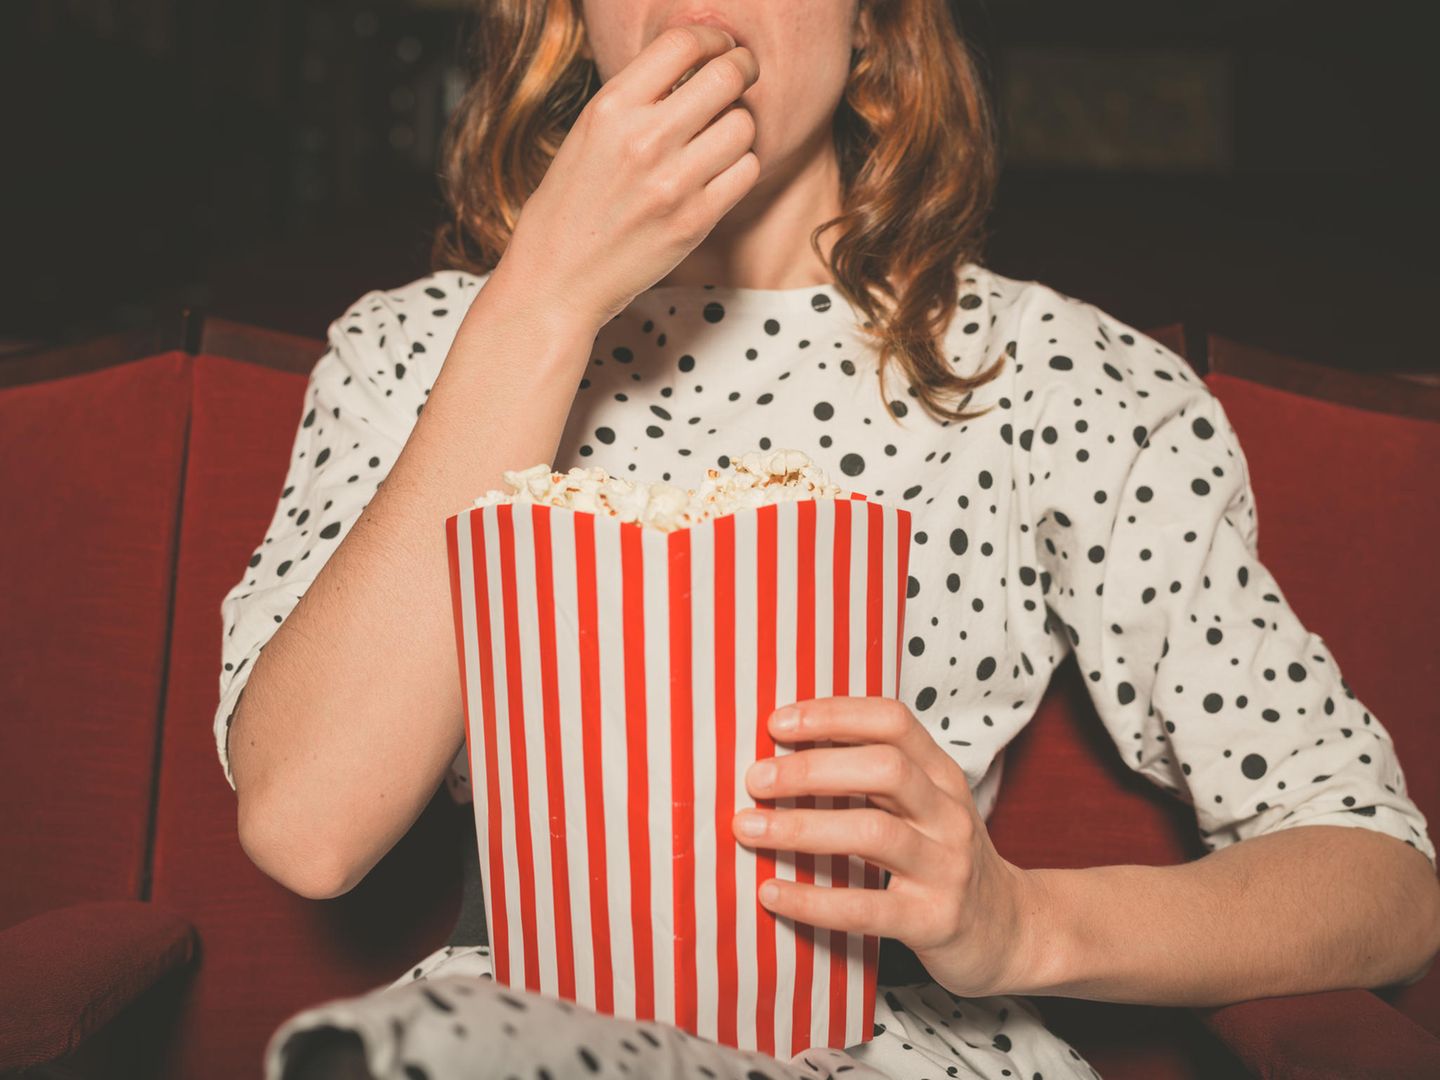 Liebeskummertipps der Redaktion: Eine Frau im Kino mit Popcorn in der Hand